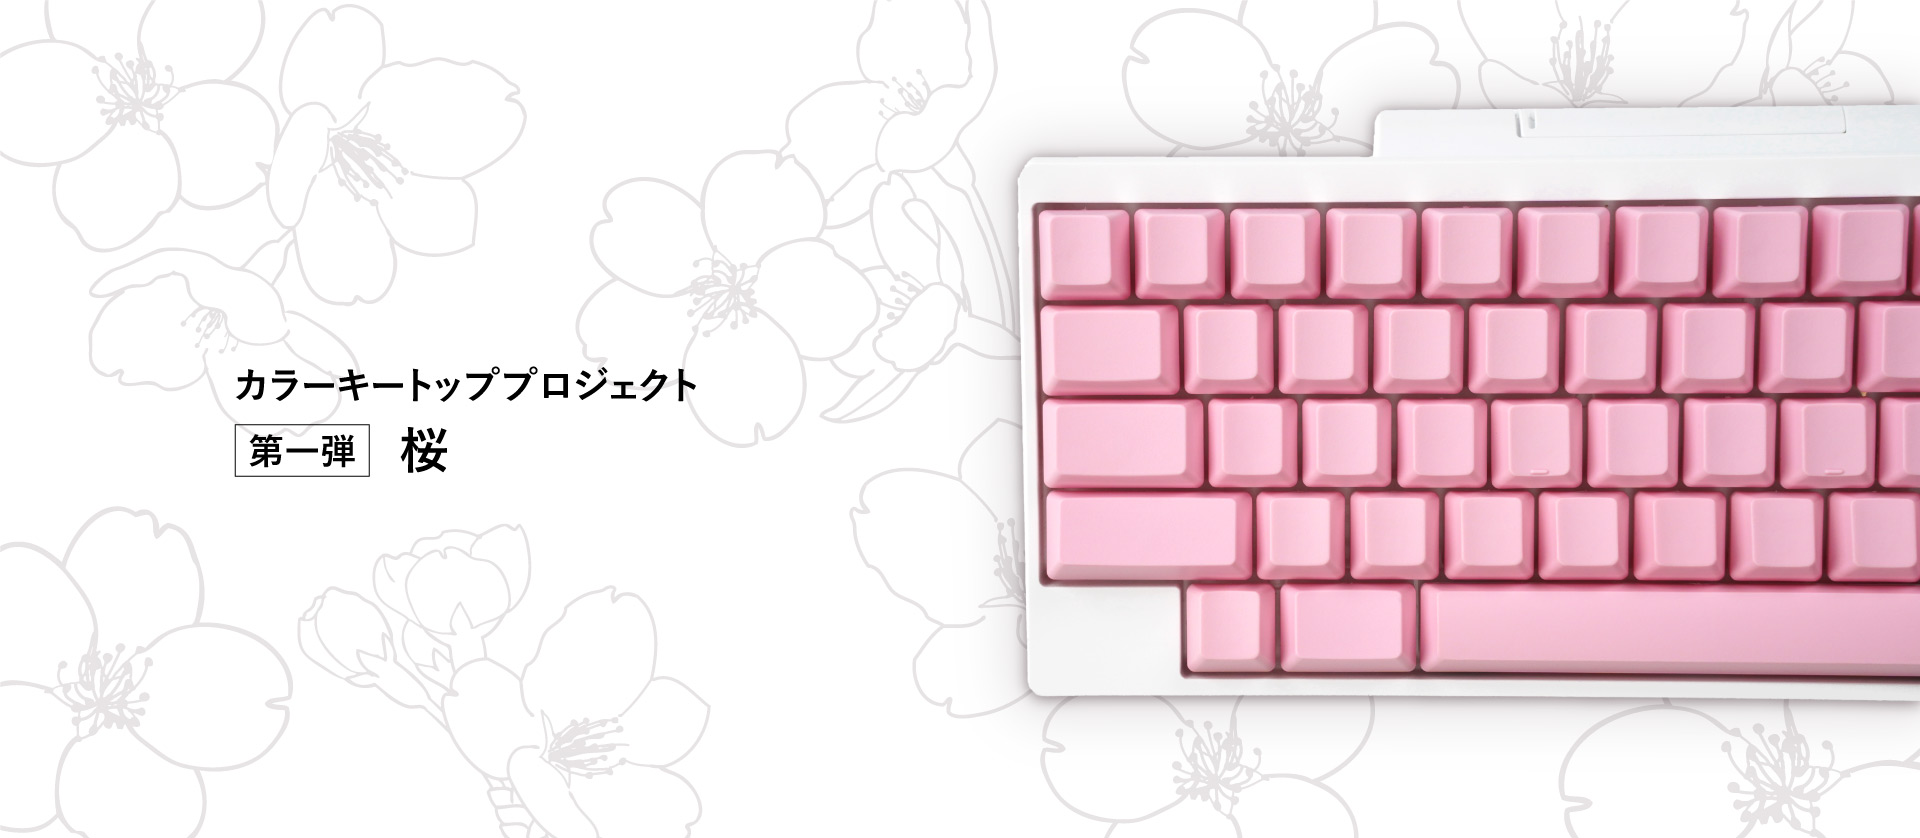 日本の魅力を世界へ伝える「HHKBカラーキートッププロジェクト」を発表 第一弾 「桜」のキートップセットを販売